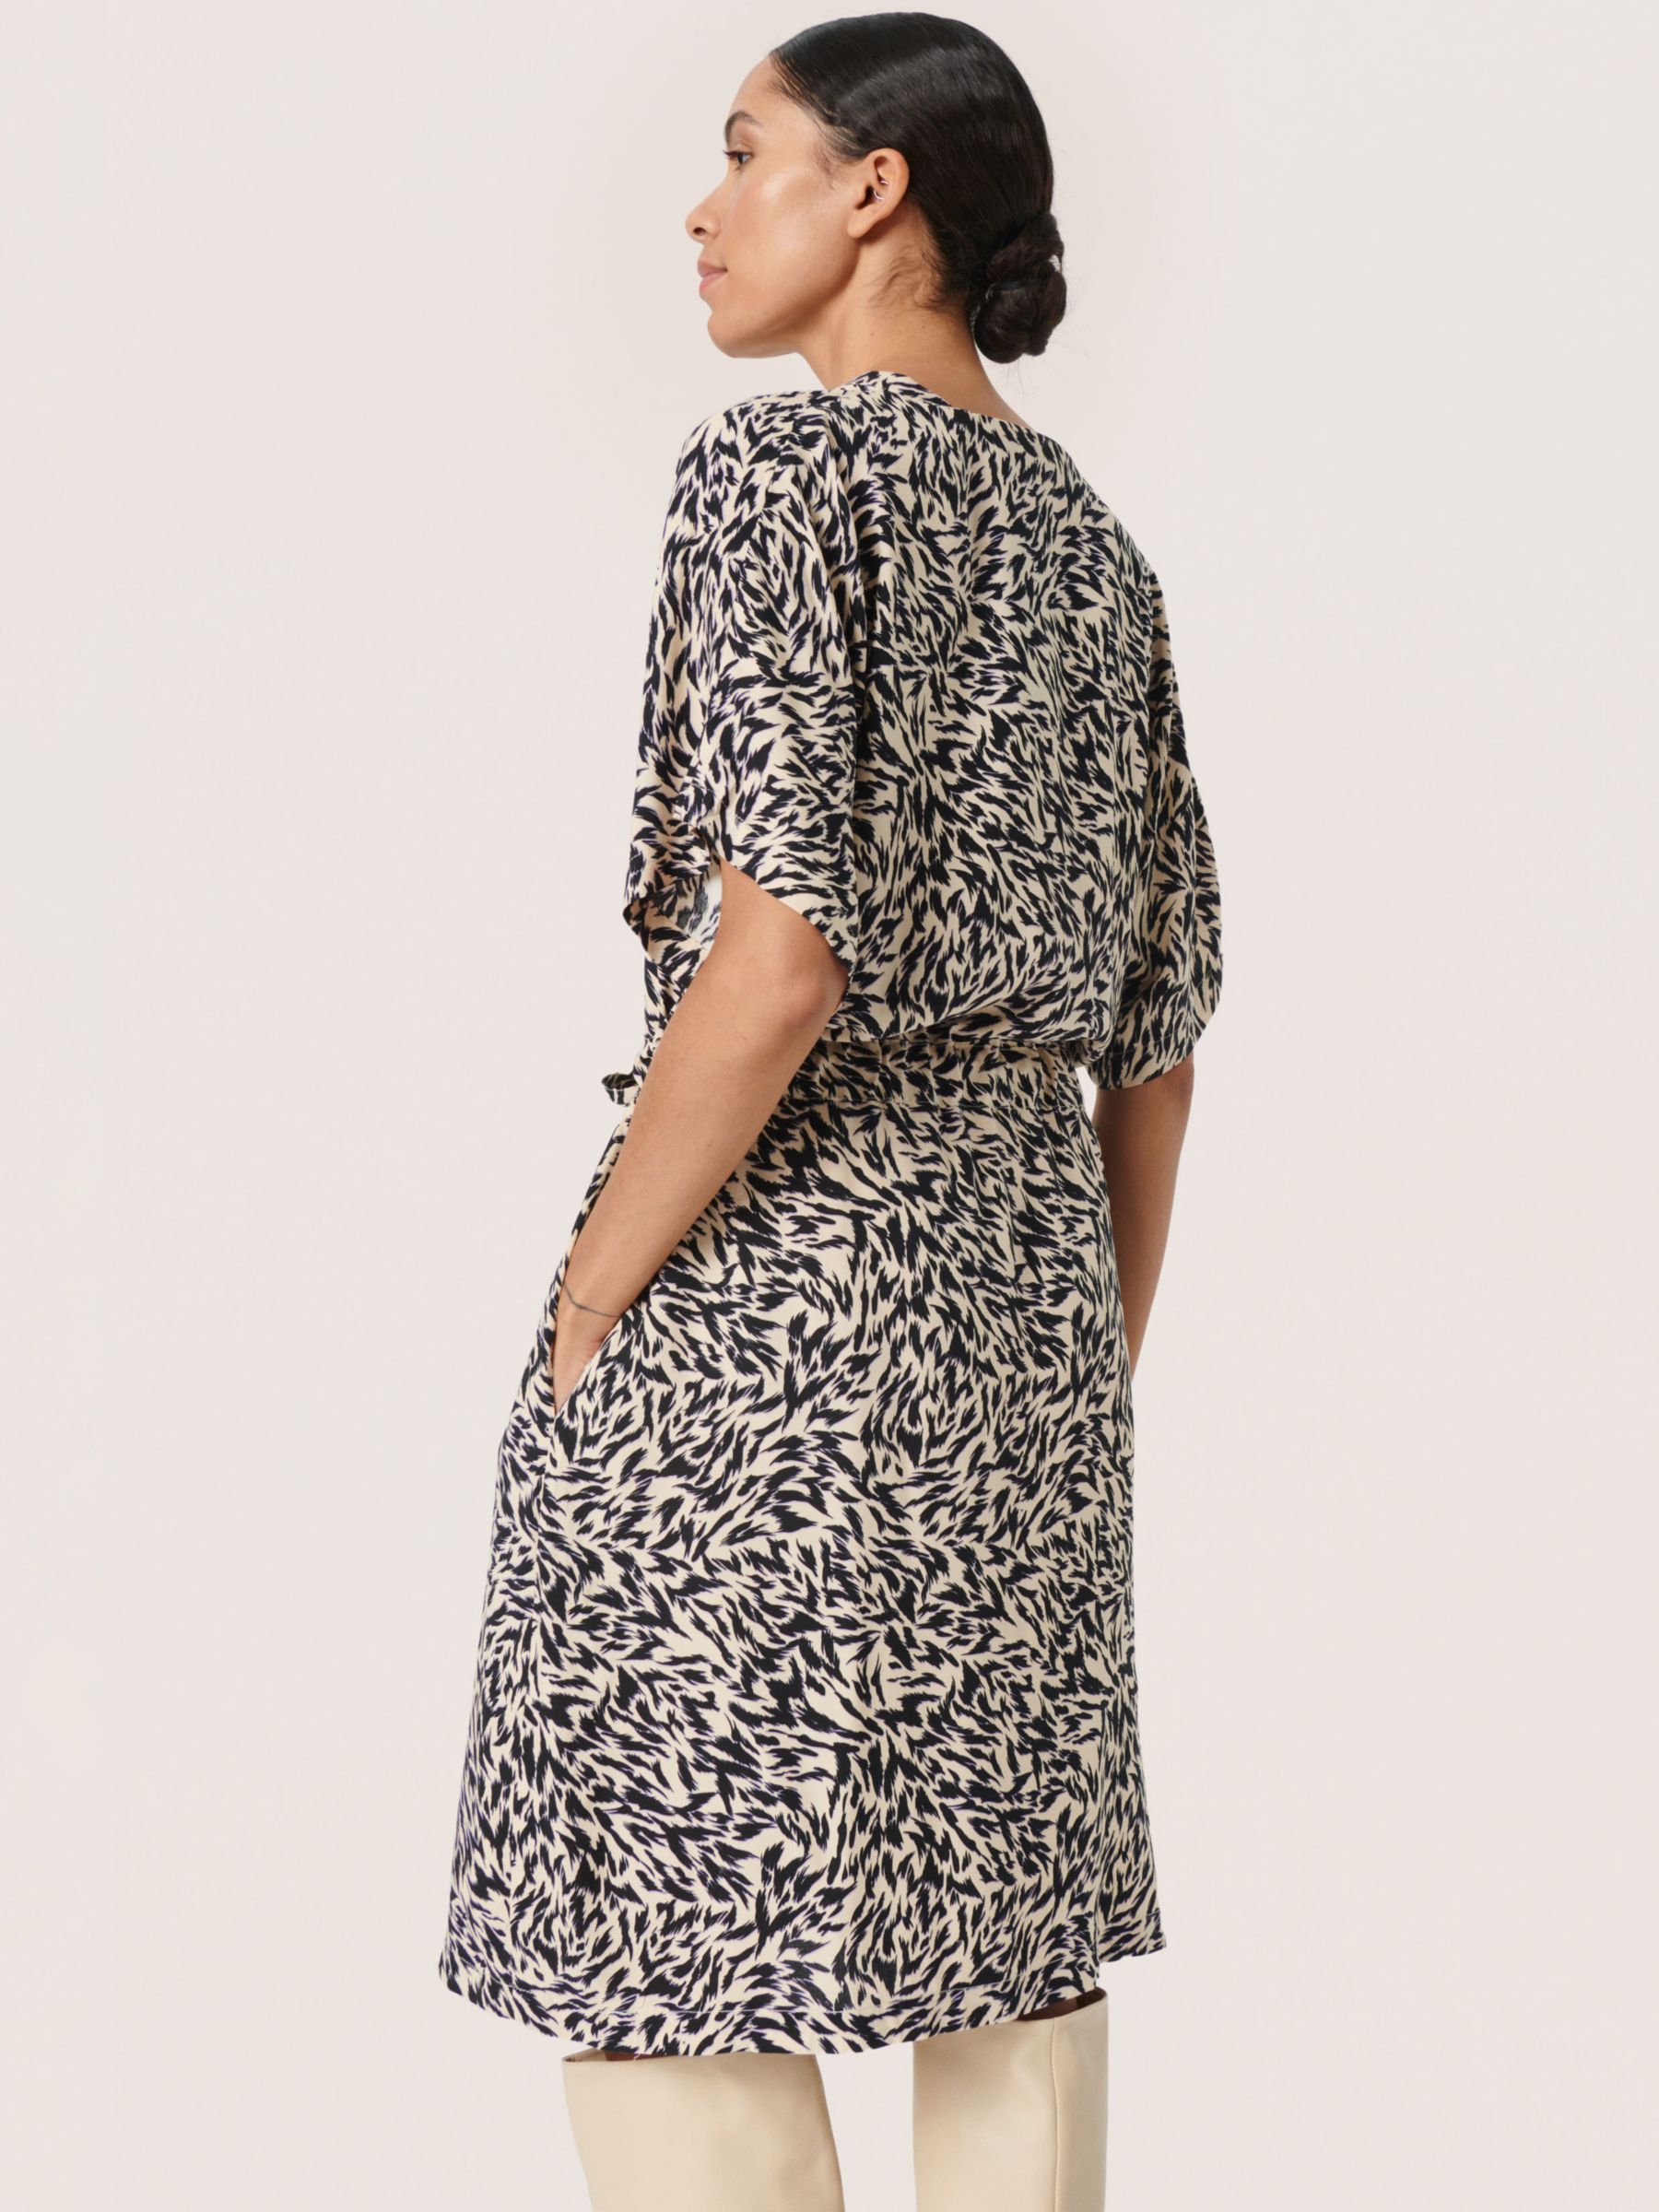 Buy Soaked In Luxury Arowe Short Sleeve Knee Length Dress, Black Preppy Online at johnlewis.com